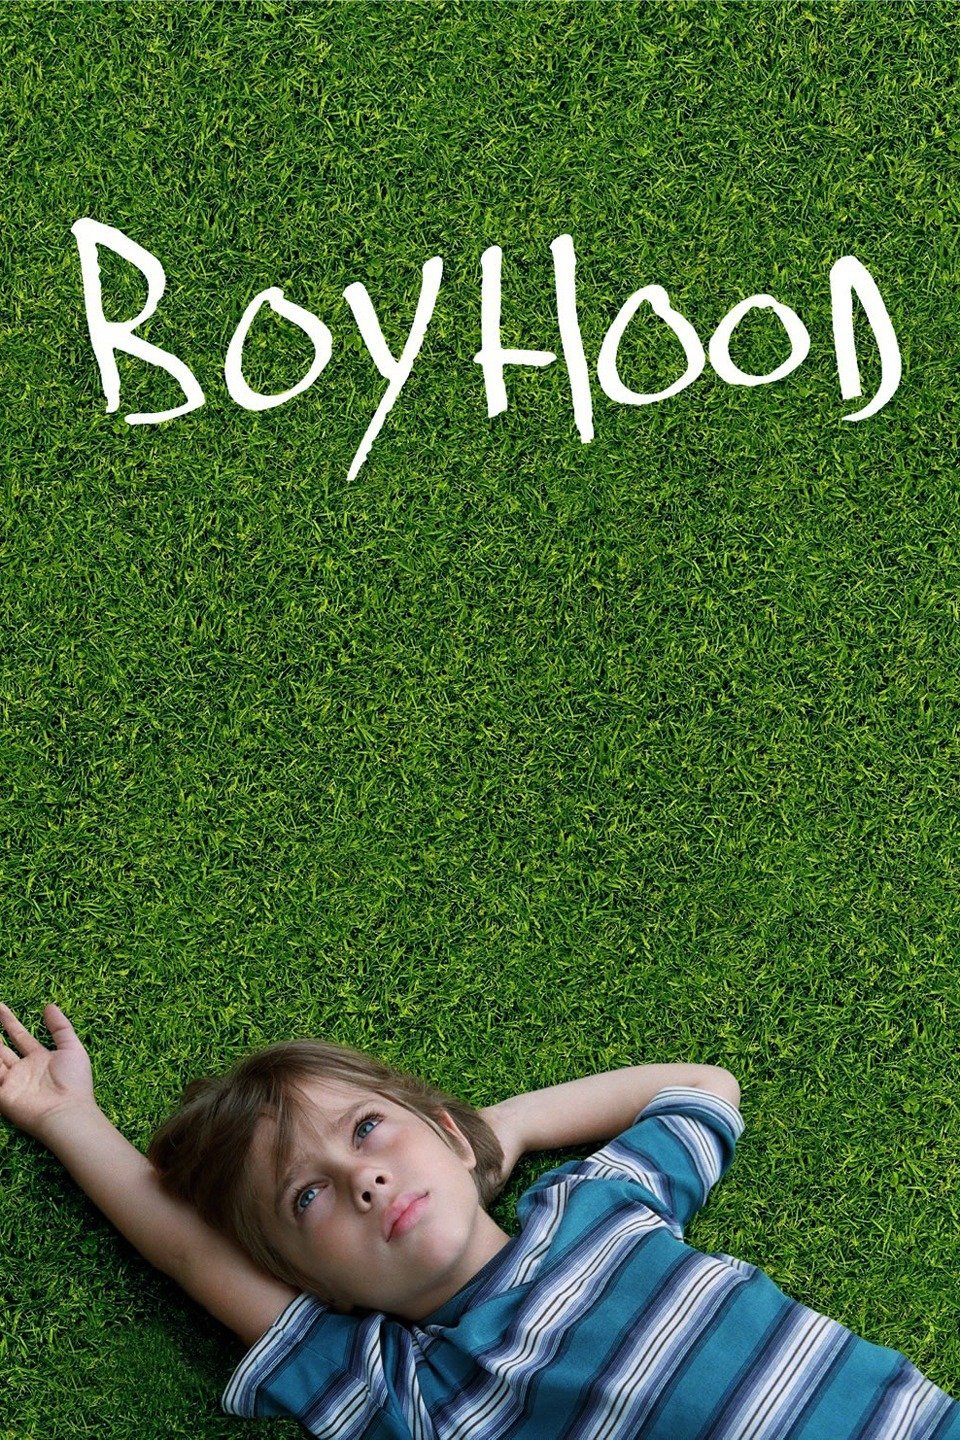 [MINI Super-HQ] Boyhood (2014) บอย ฮูด [1080p] [พากย์ไทย DTS + เสียงอังกฤษ DTS] [บรรยายไทย + อังกฤษ] [เสียงไทย + ซับไทย] [OPENLOAD]